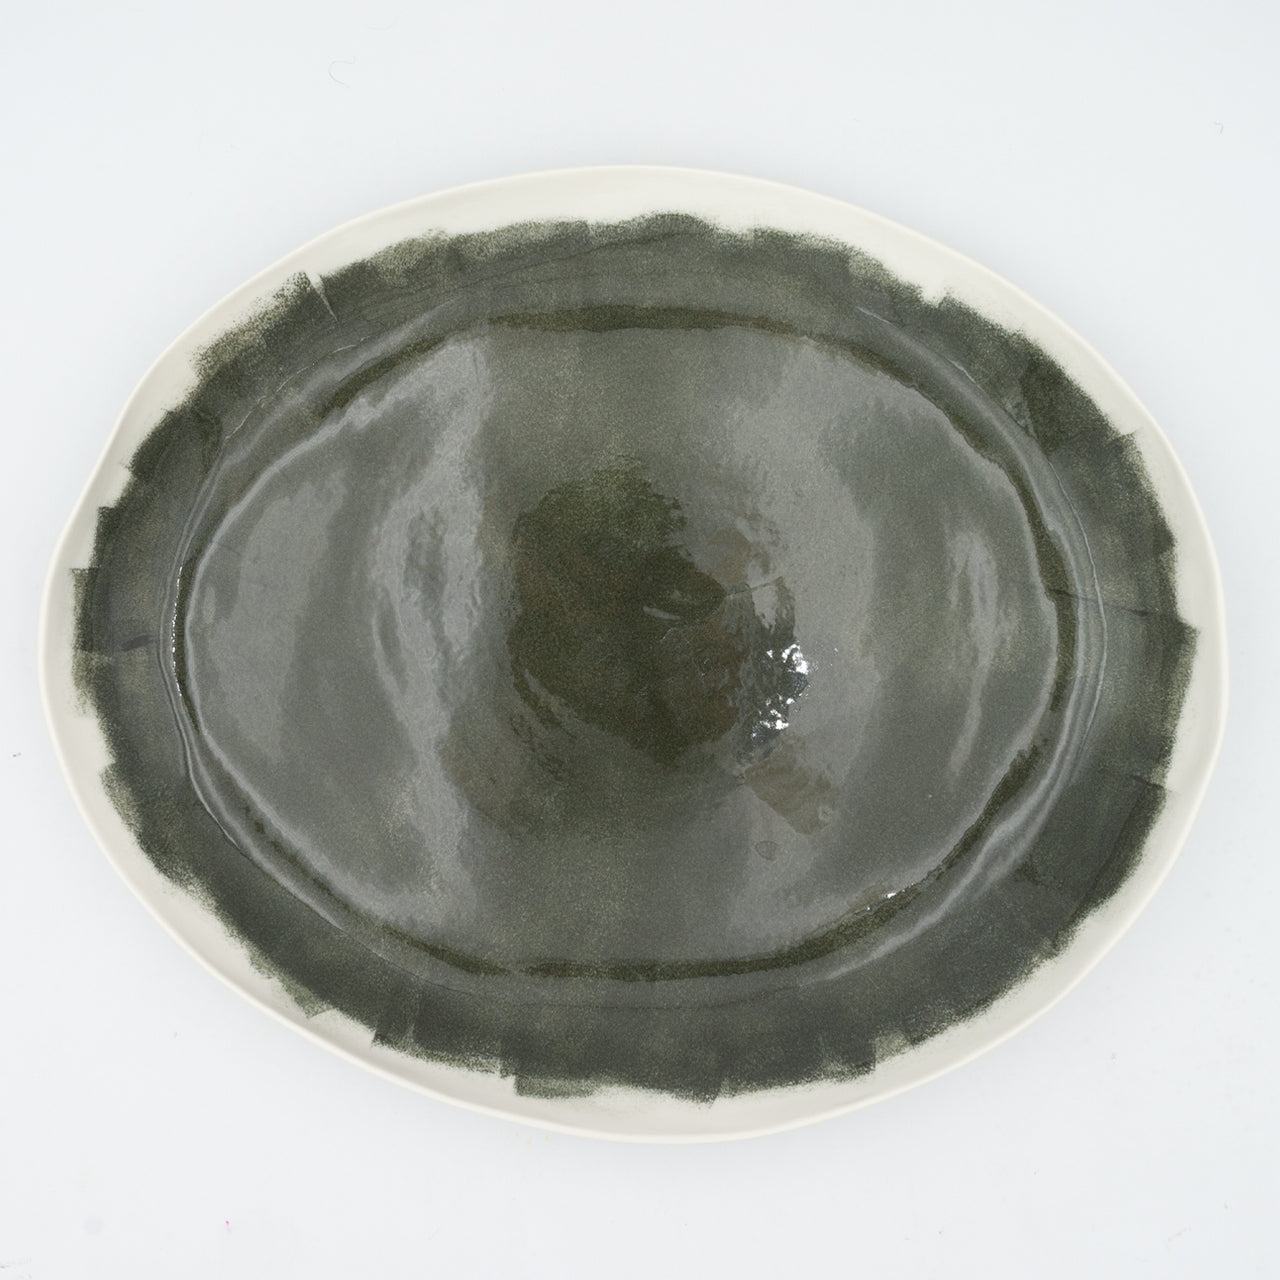 Bertozzi Brushed Oval Platter / Porcelain / 40x30cm / Dark Green